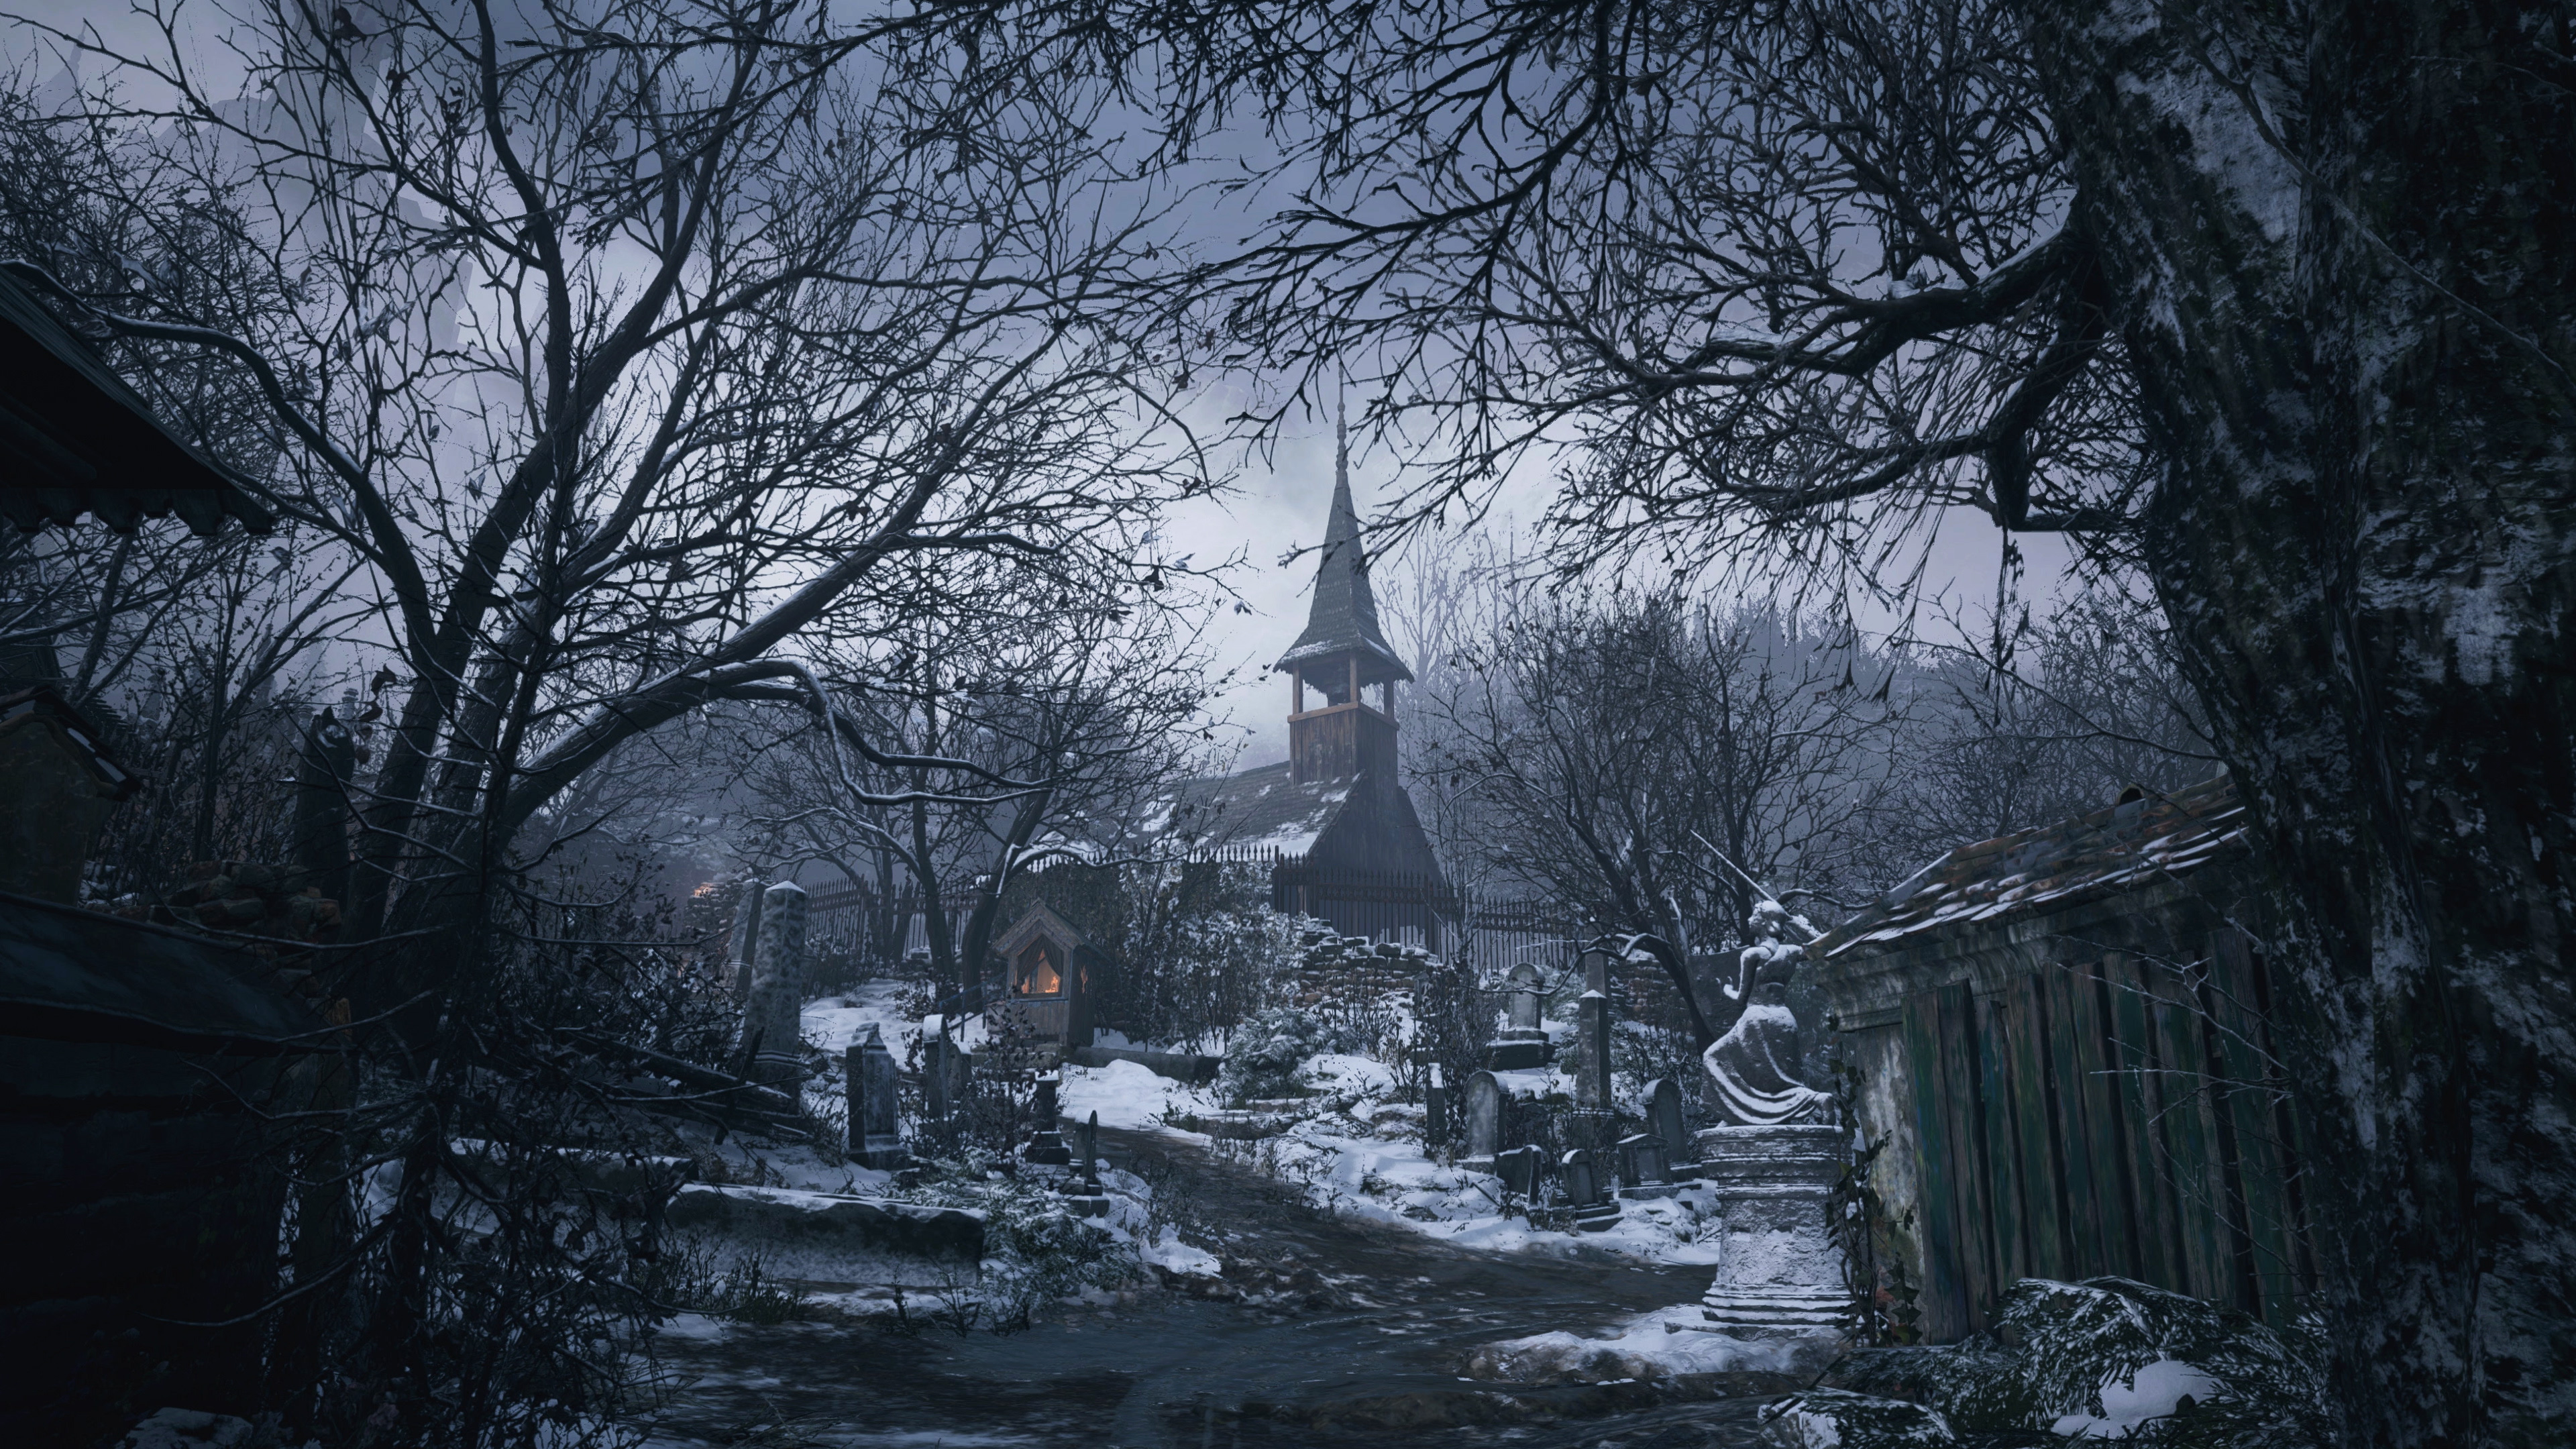 How Resident Evil 2 Shaped The Modern Horror Landscape